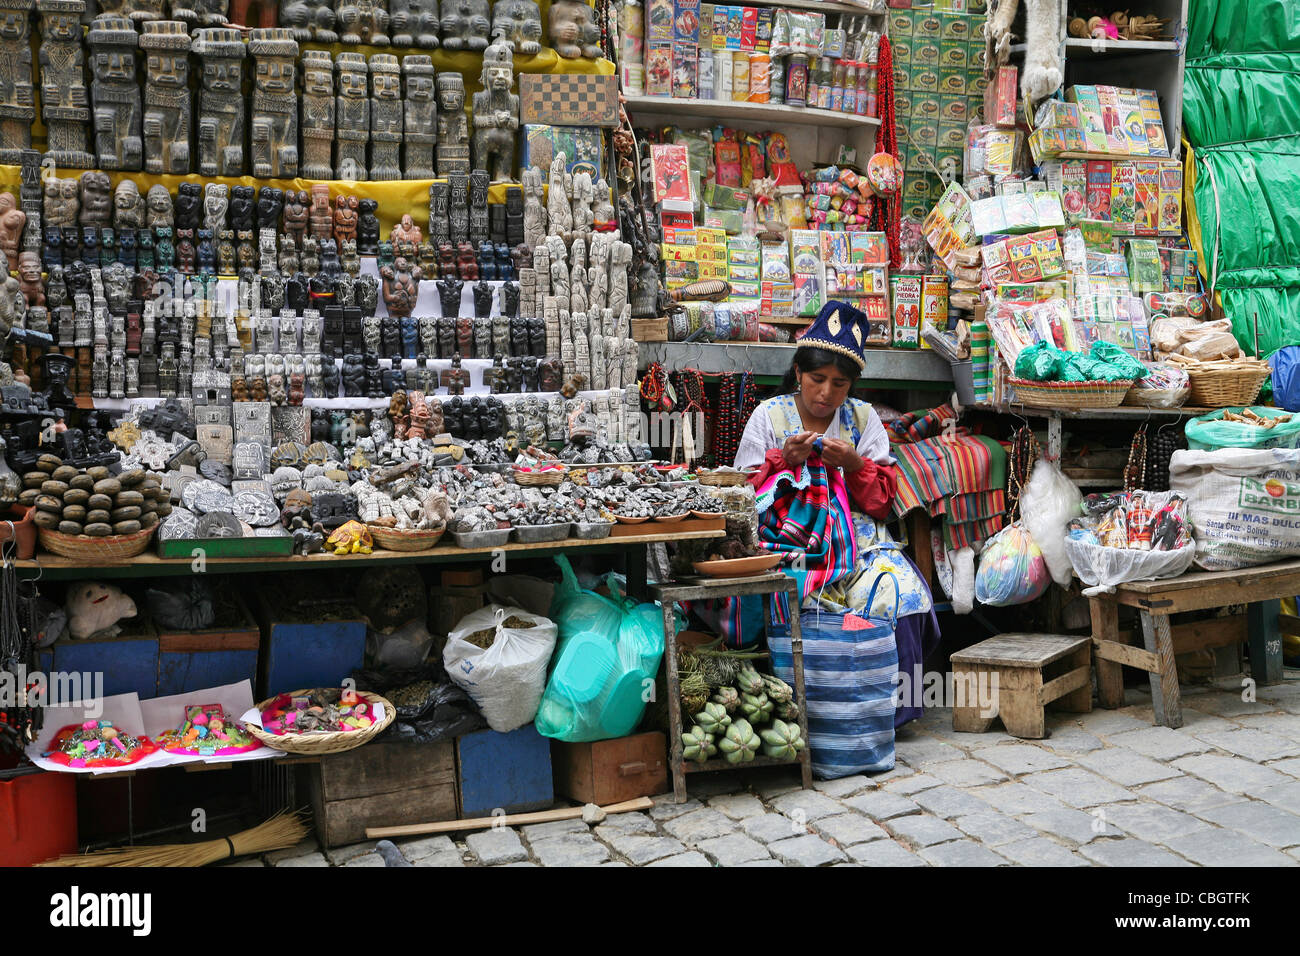 Nativo di donna boliviana maglia in stallo di mercato con negozio di souvenir per i turisti a la strega il mercato nella città di La Paz, Bolivia Foto Stock